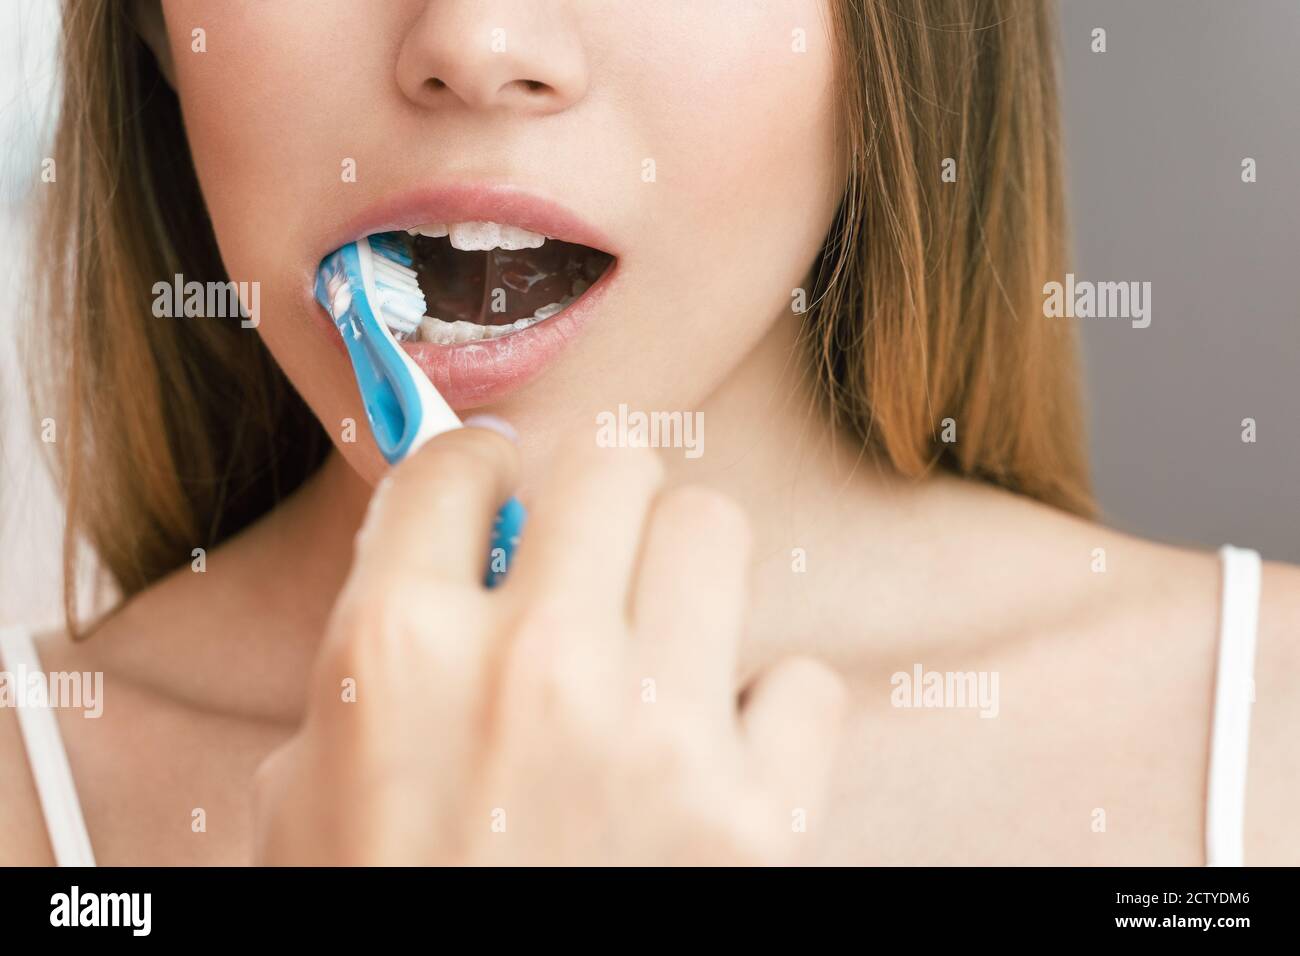 Una giovane donna sta spazzolando i denti in bagno. Riflessione nello specchio Foto Stock